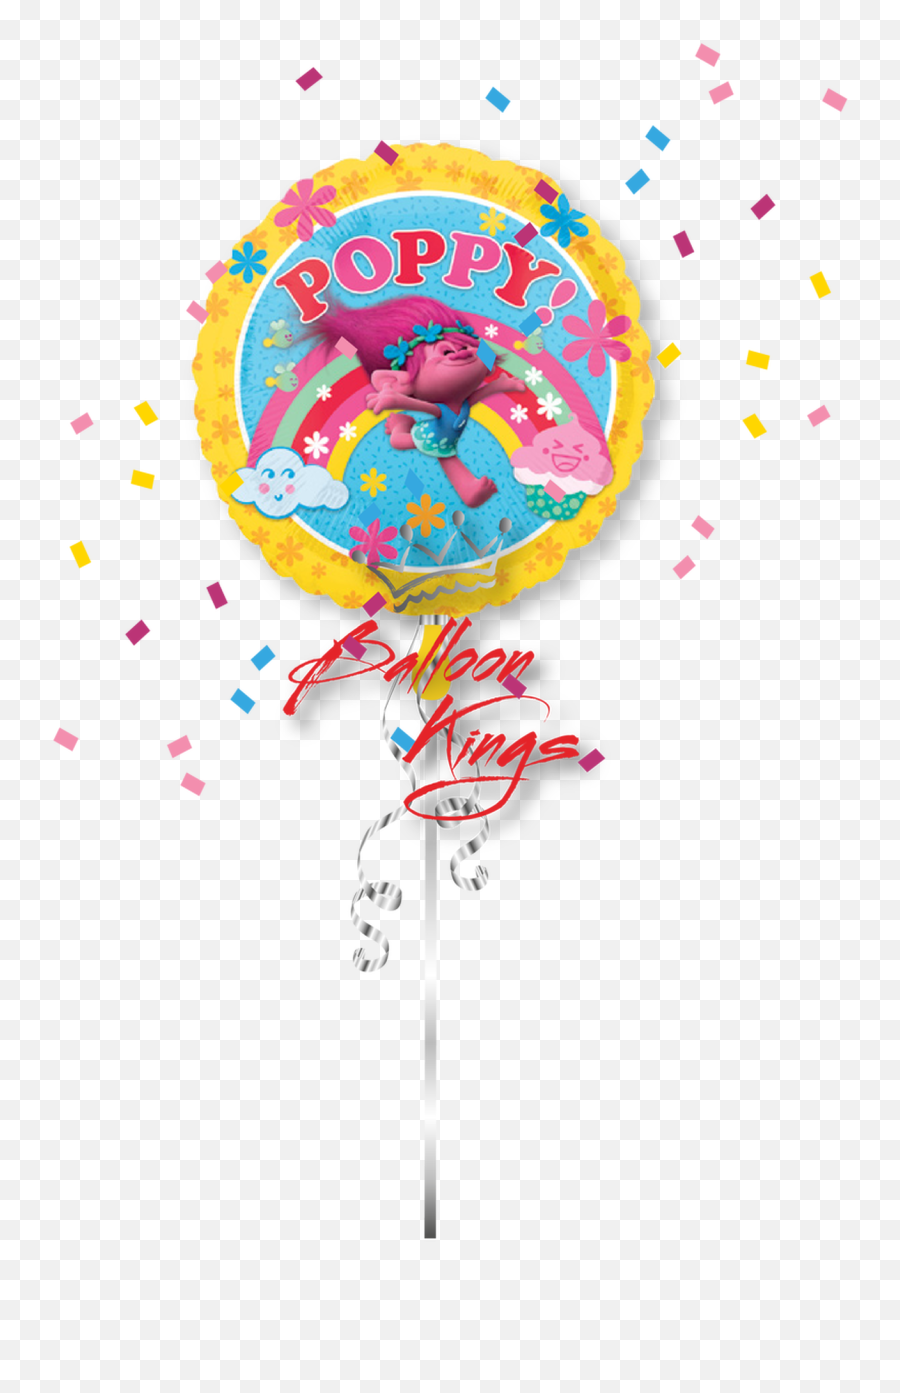 Poppy Trolls - Balloon Emoji,Poppy Emoji